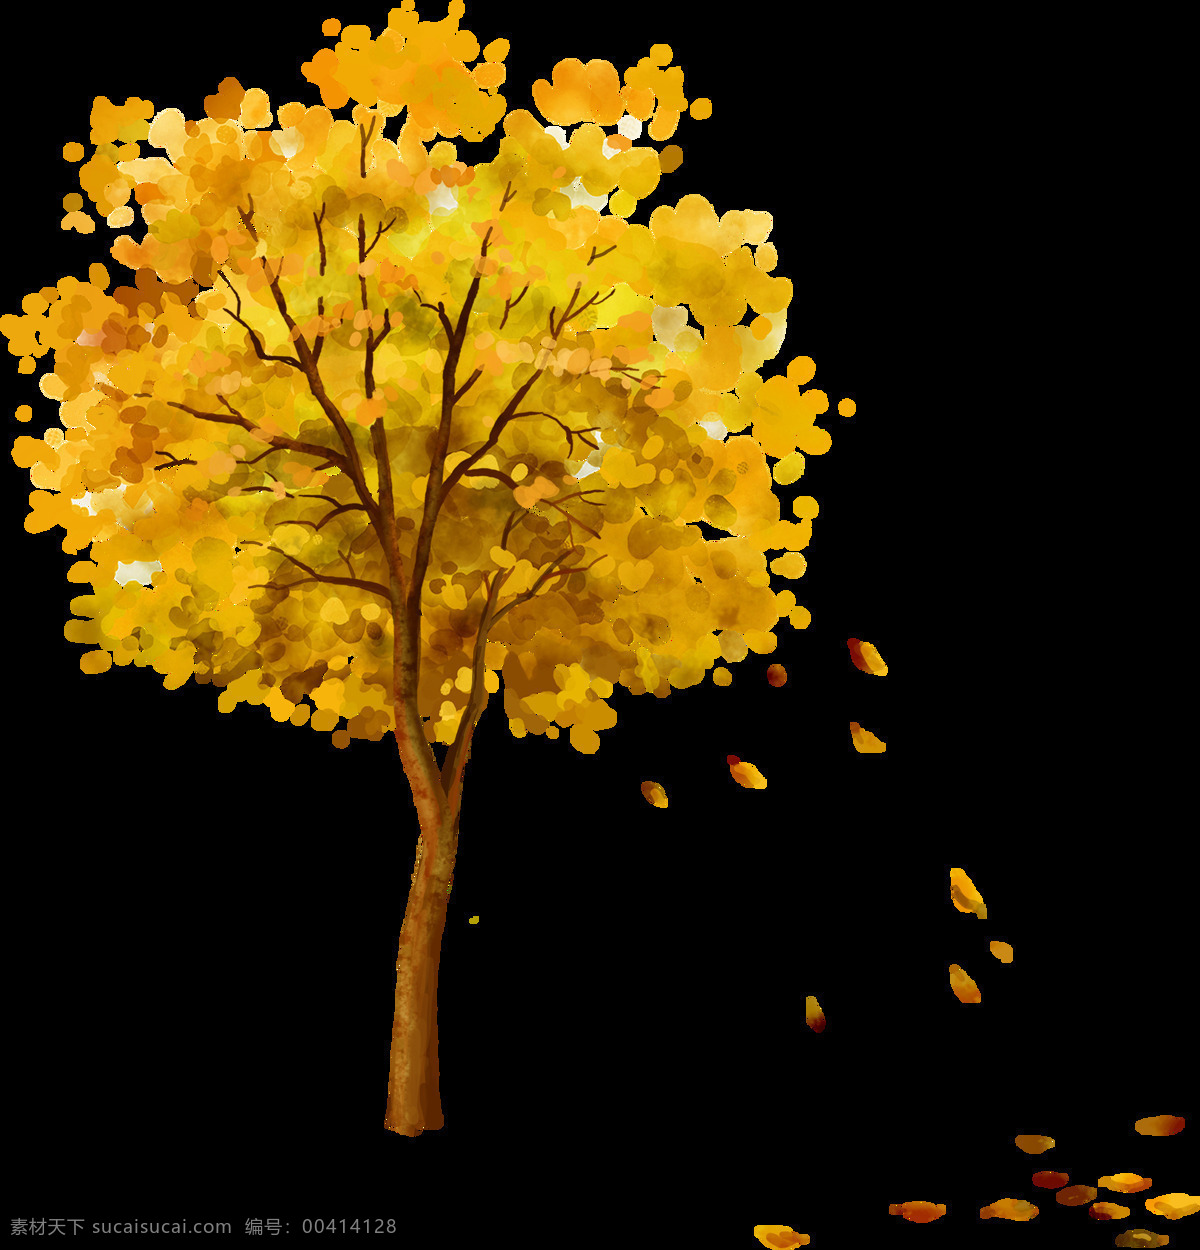 橙色 装饰 树木 合集 秋意 落叶 木头 元素 枯萎 飘洒 秋落